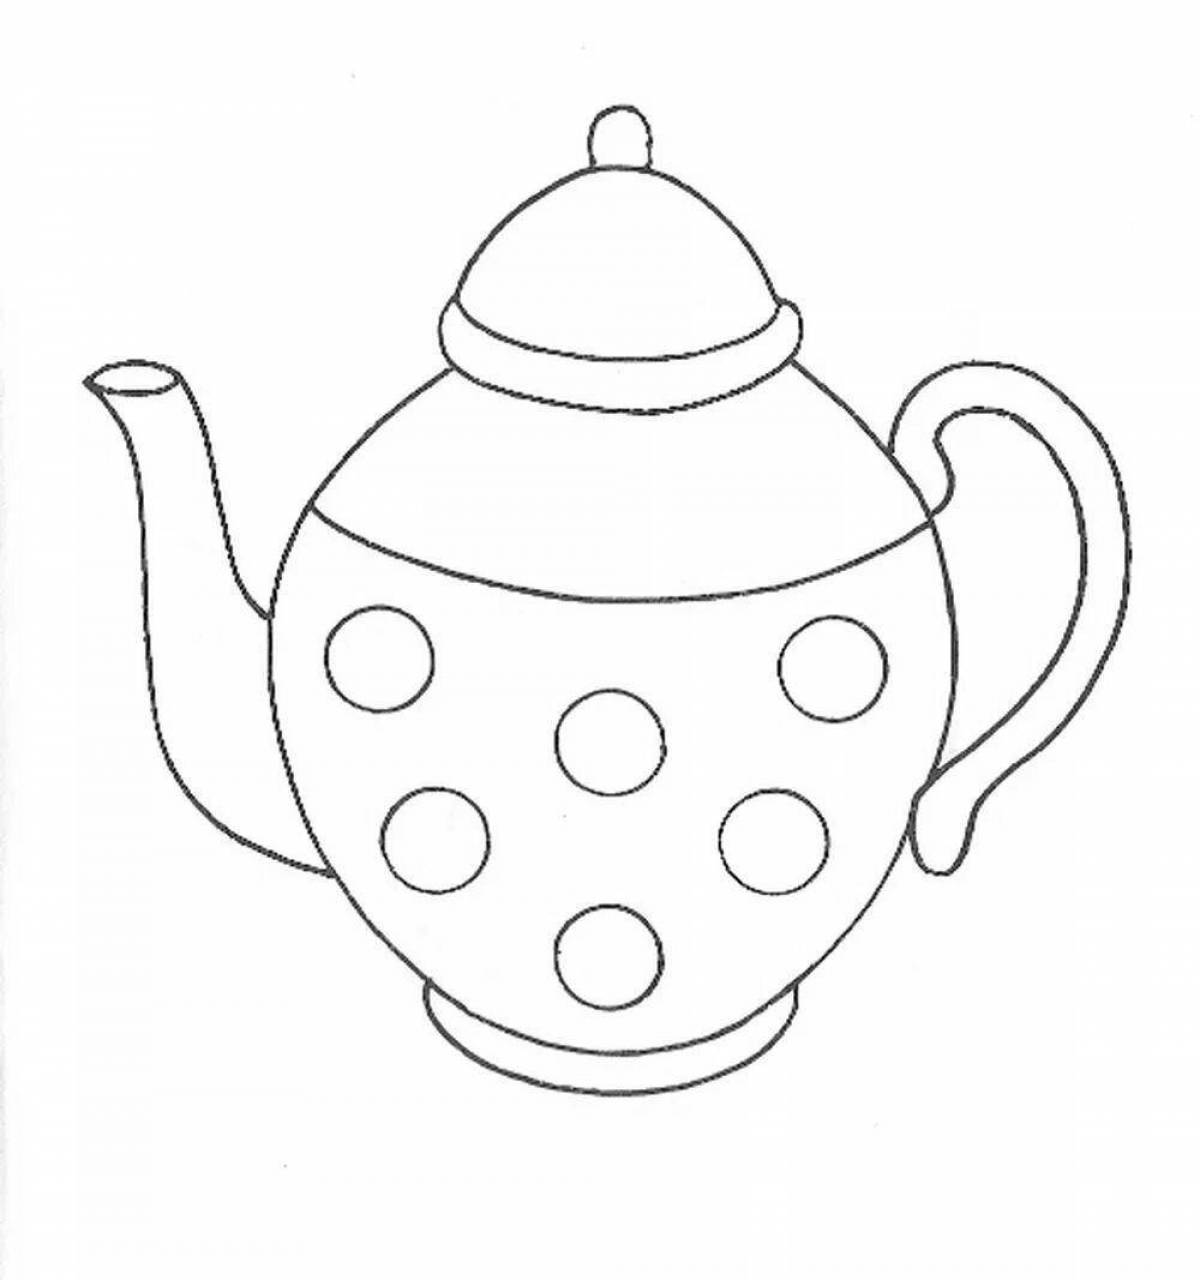 Цветная страница раскраски чайной посуды для детей